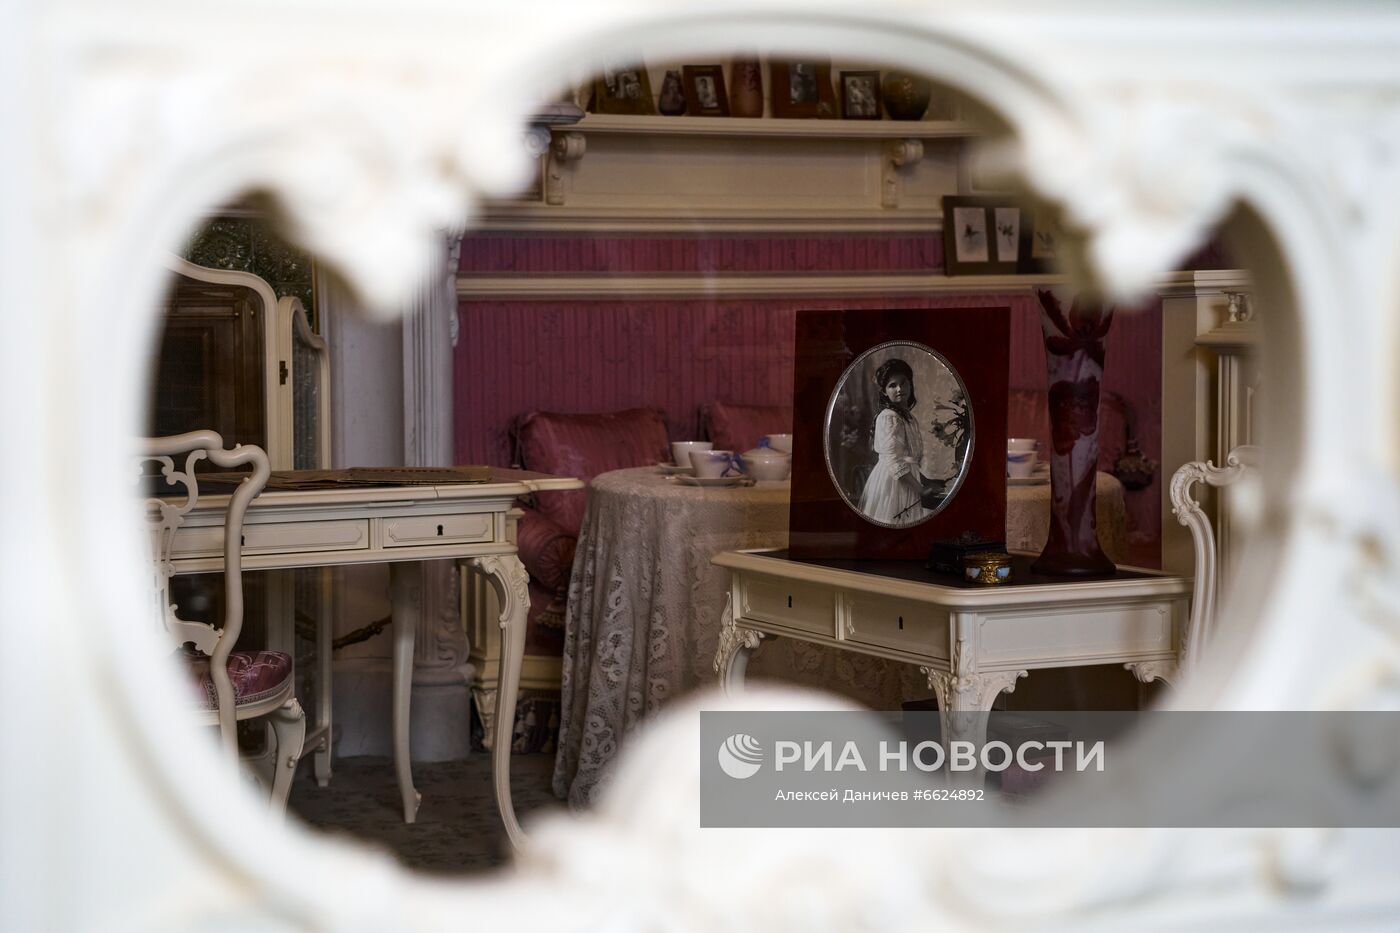 Открытие после реставрации интерьеров Александровского дворца в Царском селе